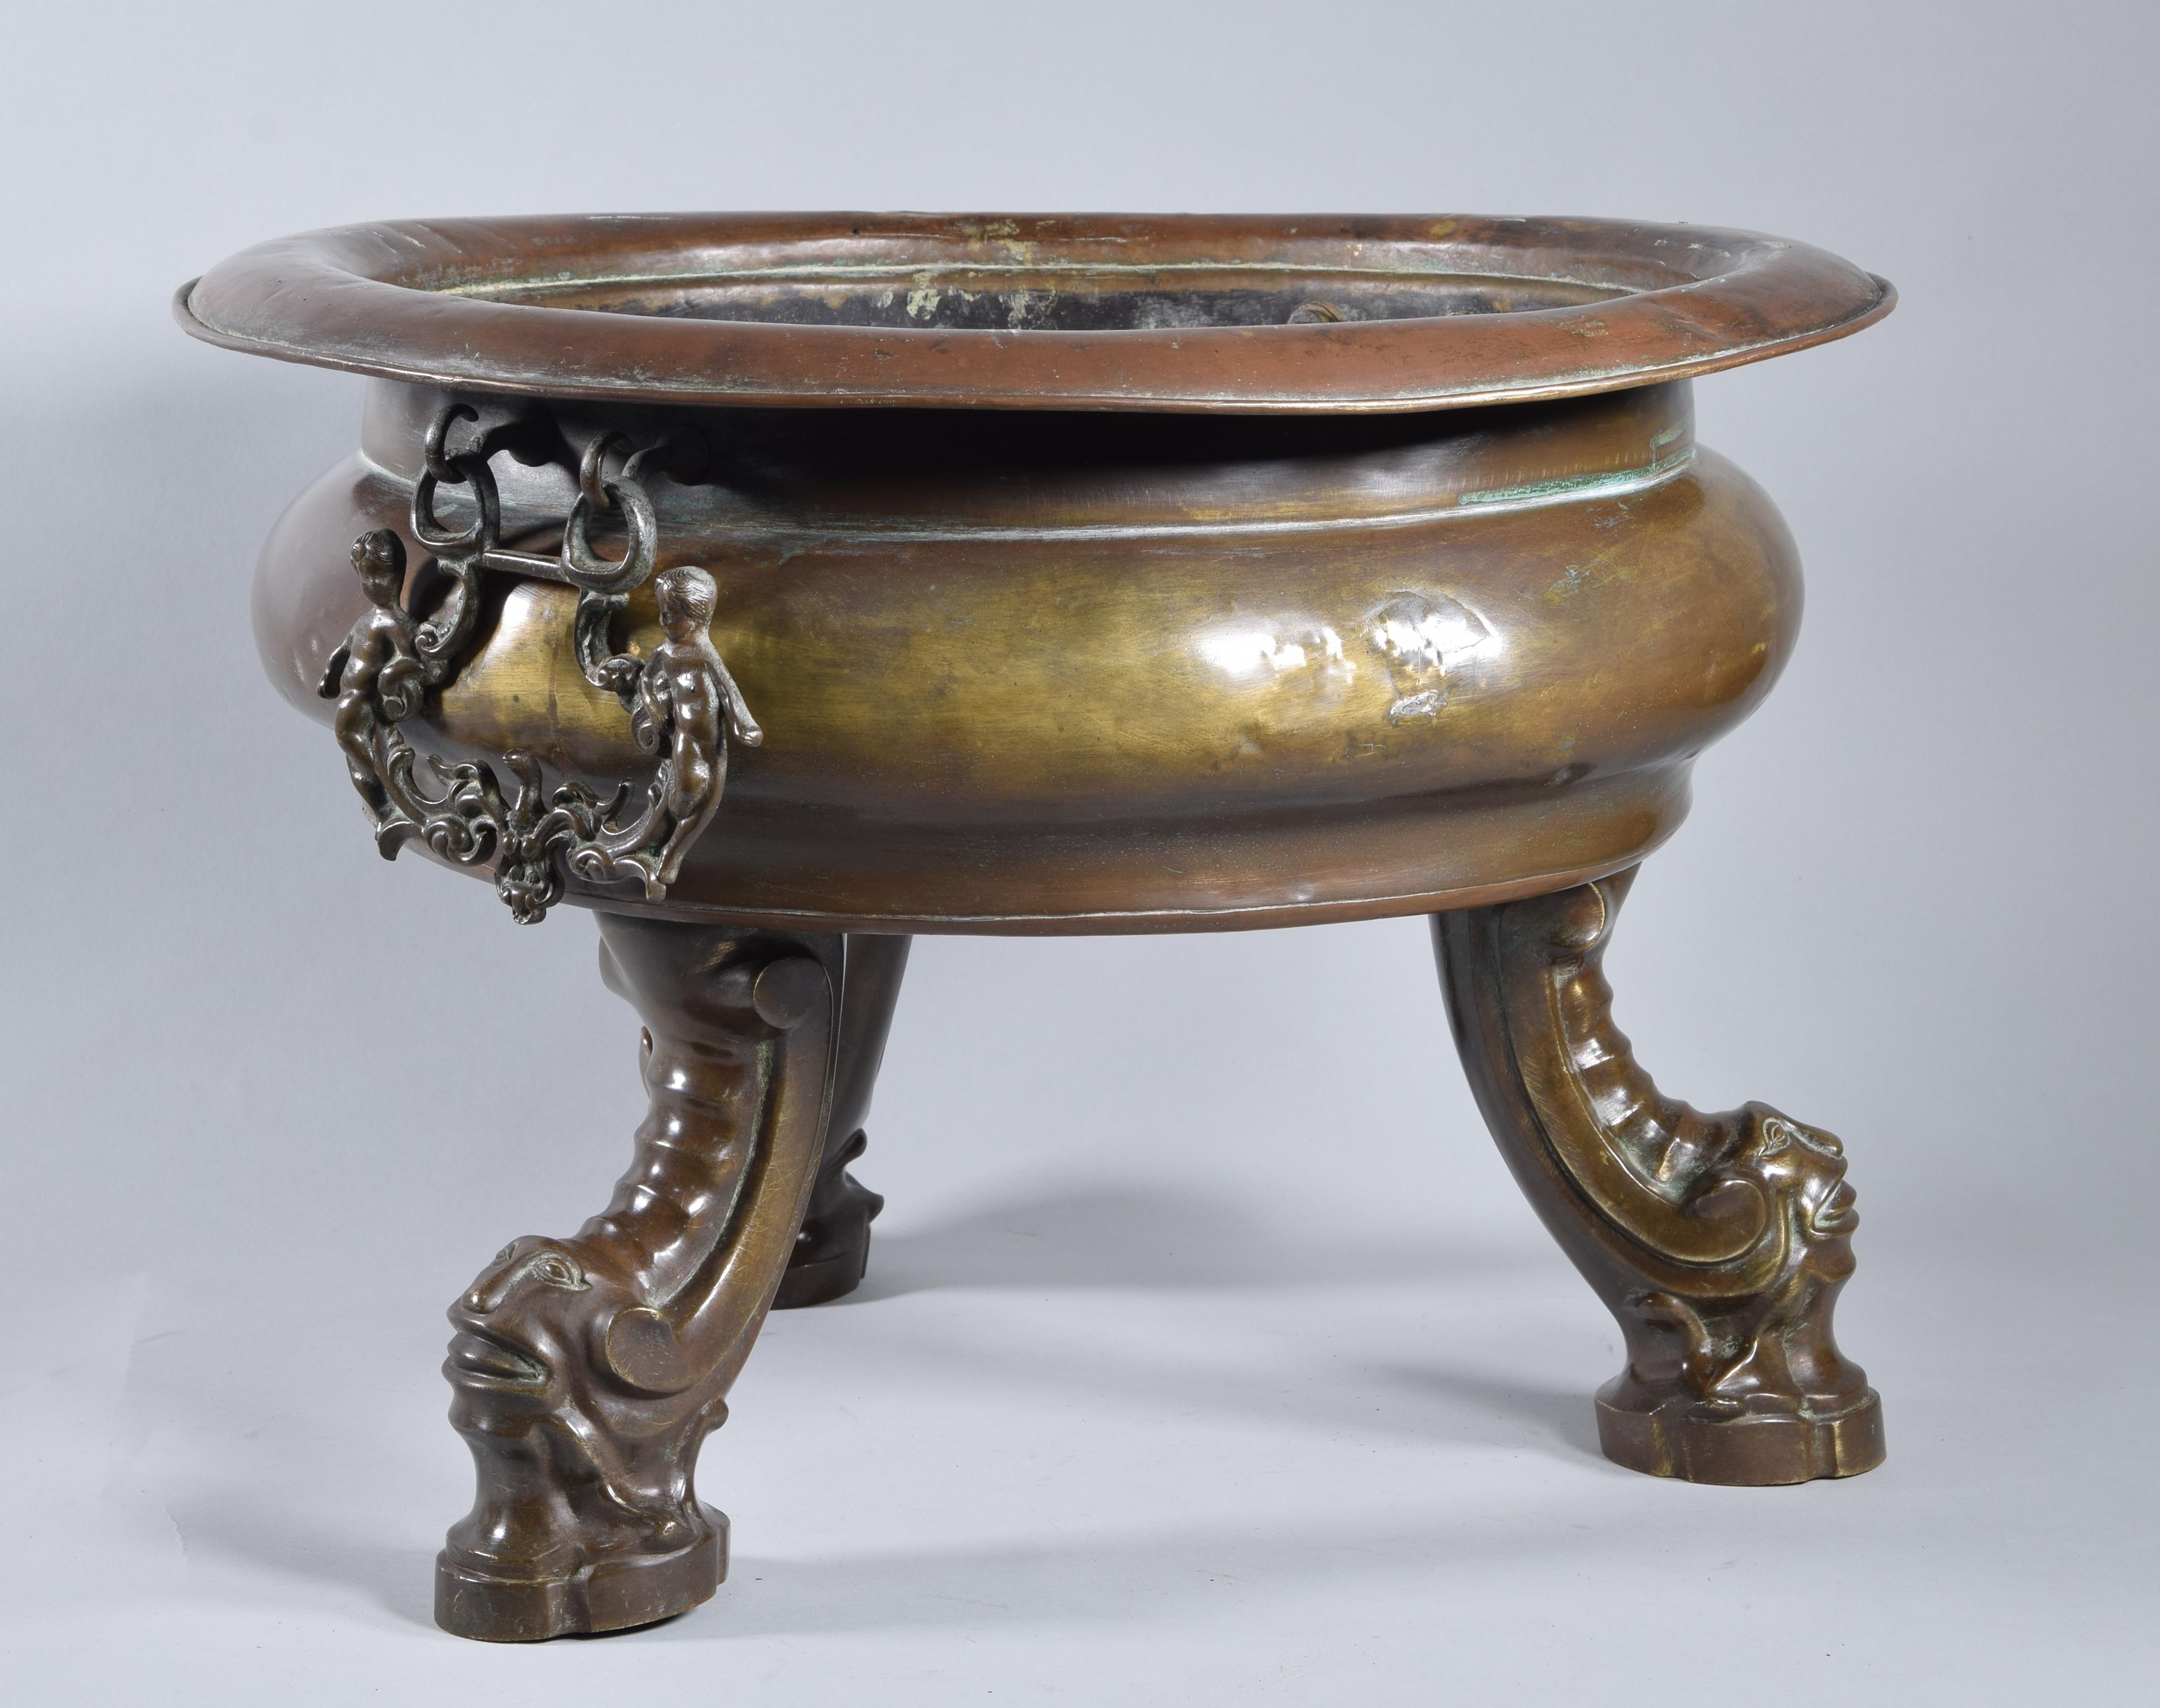 Barocke spanische Bronzelampe auf drei Beinen in Form einer geschwungenen Schnecke, die von grotesken Masken mit künstlichen Gesichtszügen gekrönt wird. Das Gefäß ist abgeflacht und gestaffelt, mit einem deutlichen Schnitt, der den Hals vom Bauch